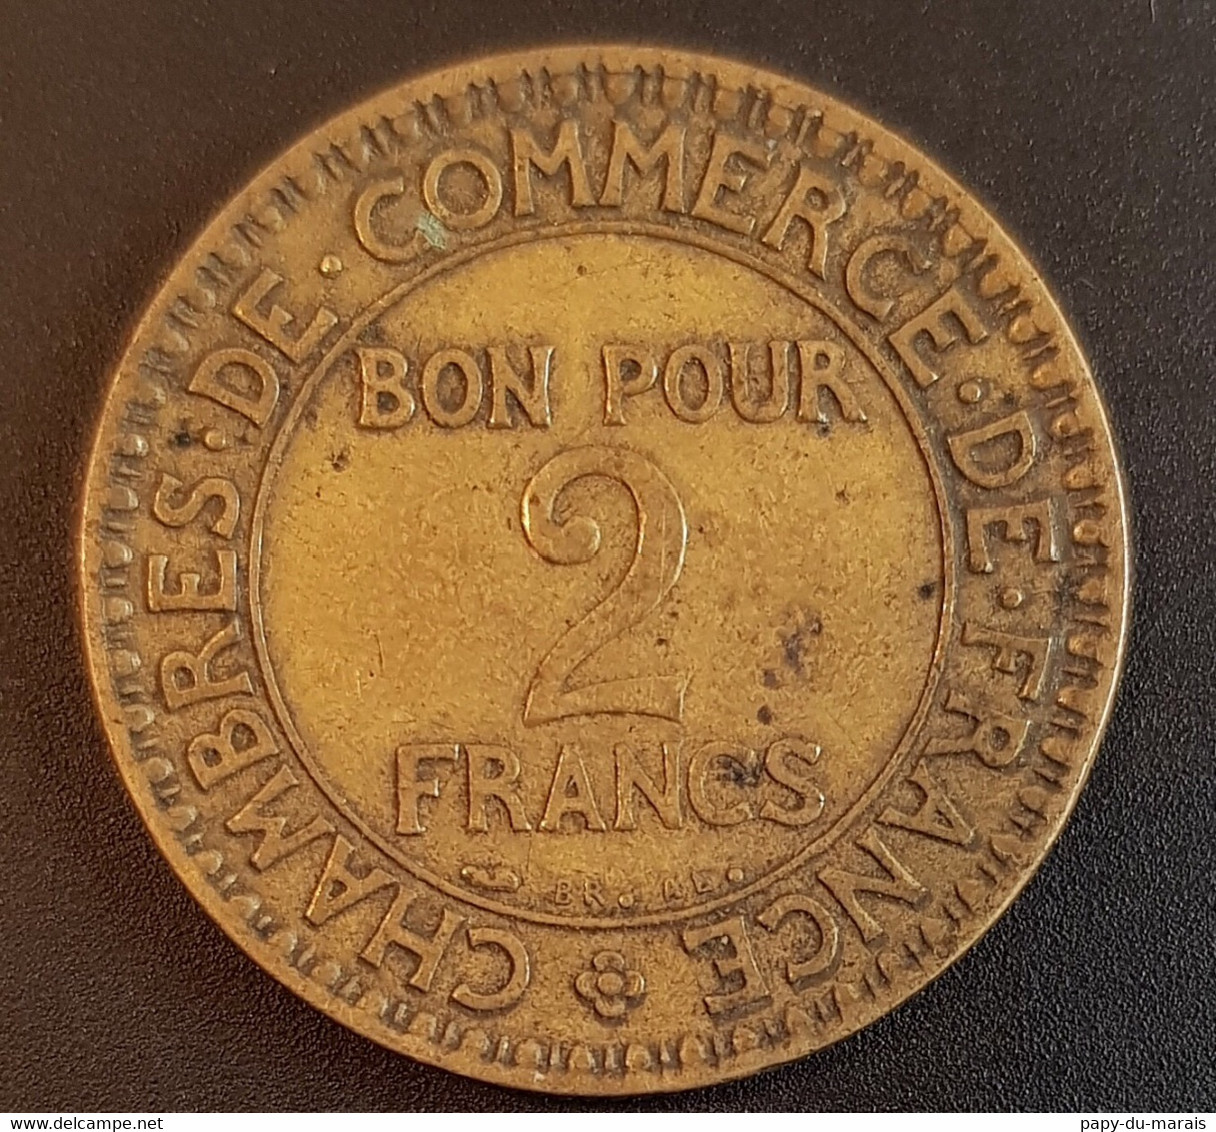 Pièce Fautée (?) 2 Francs 1925 France - Percée Au Centre+ Manque D De Domard - Variétés Et Curiosités